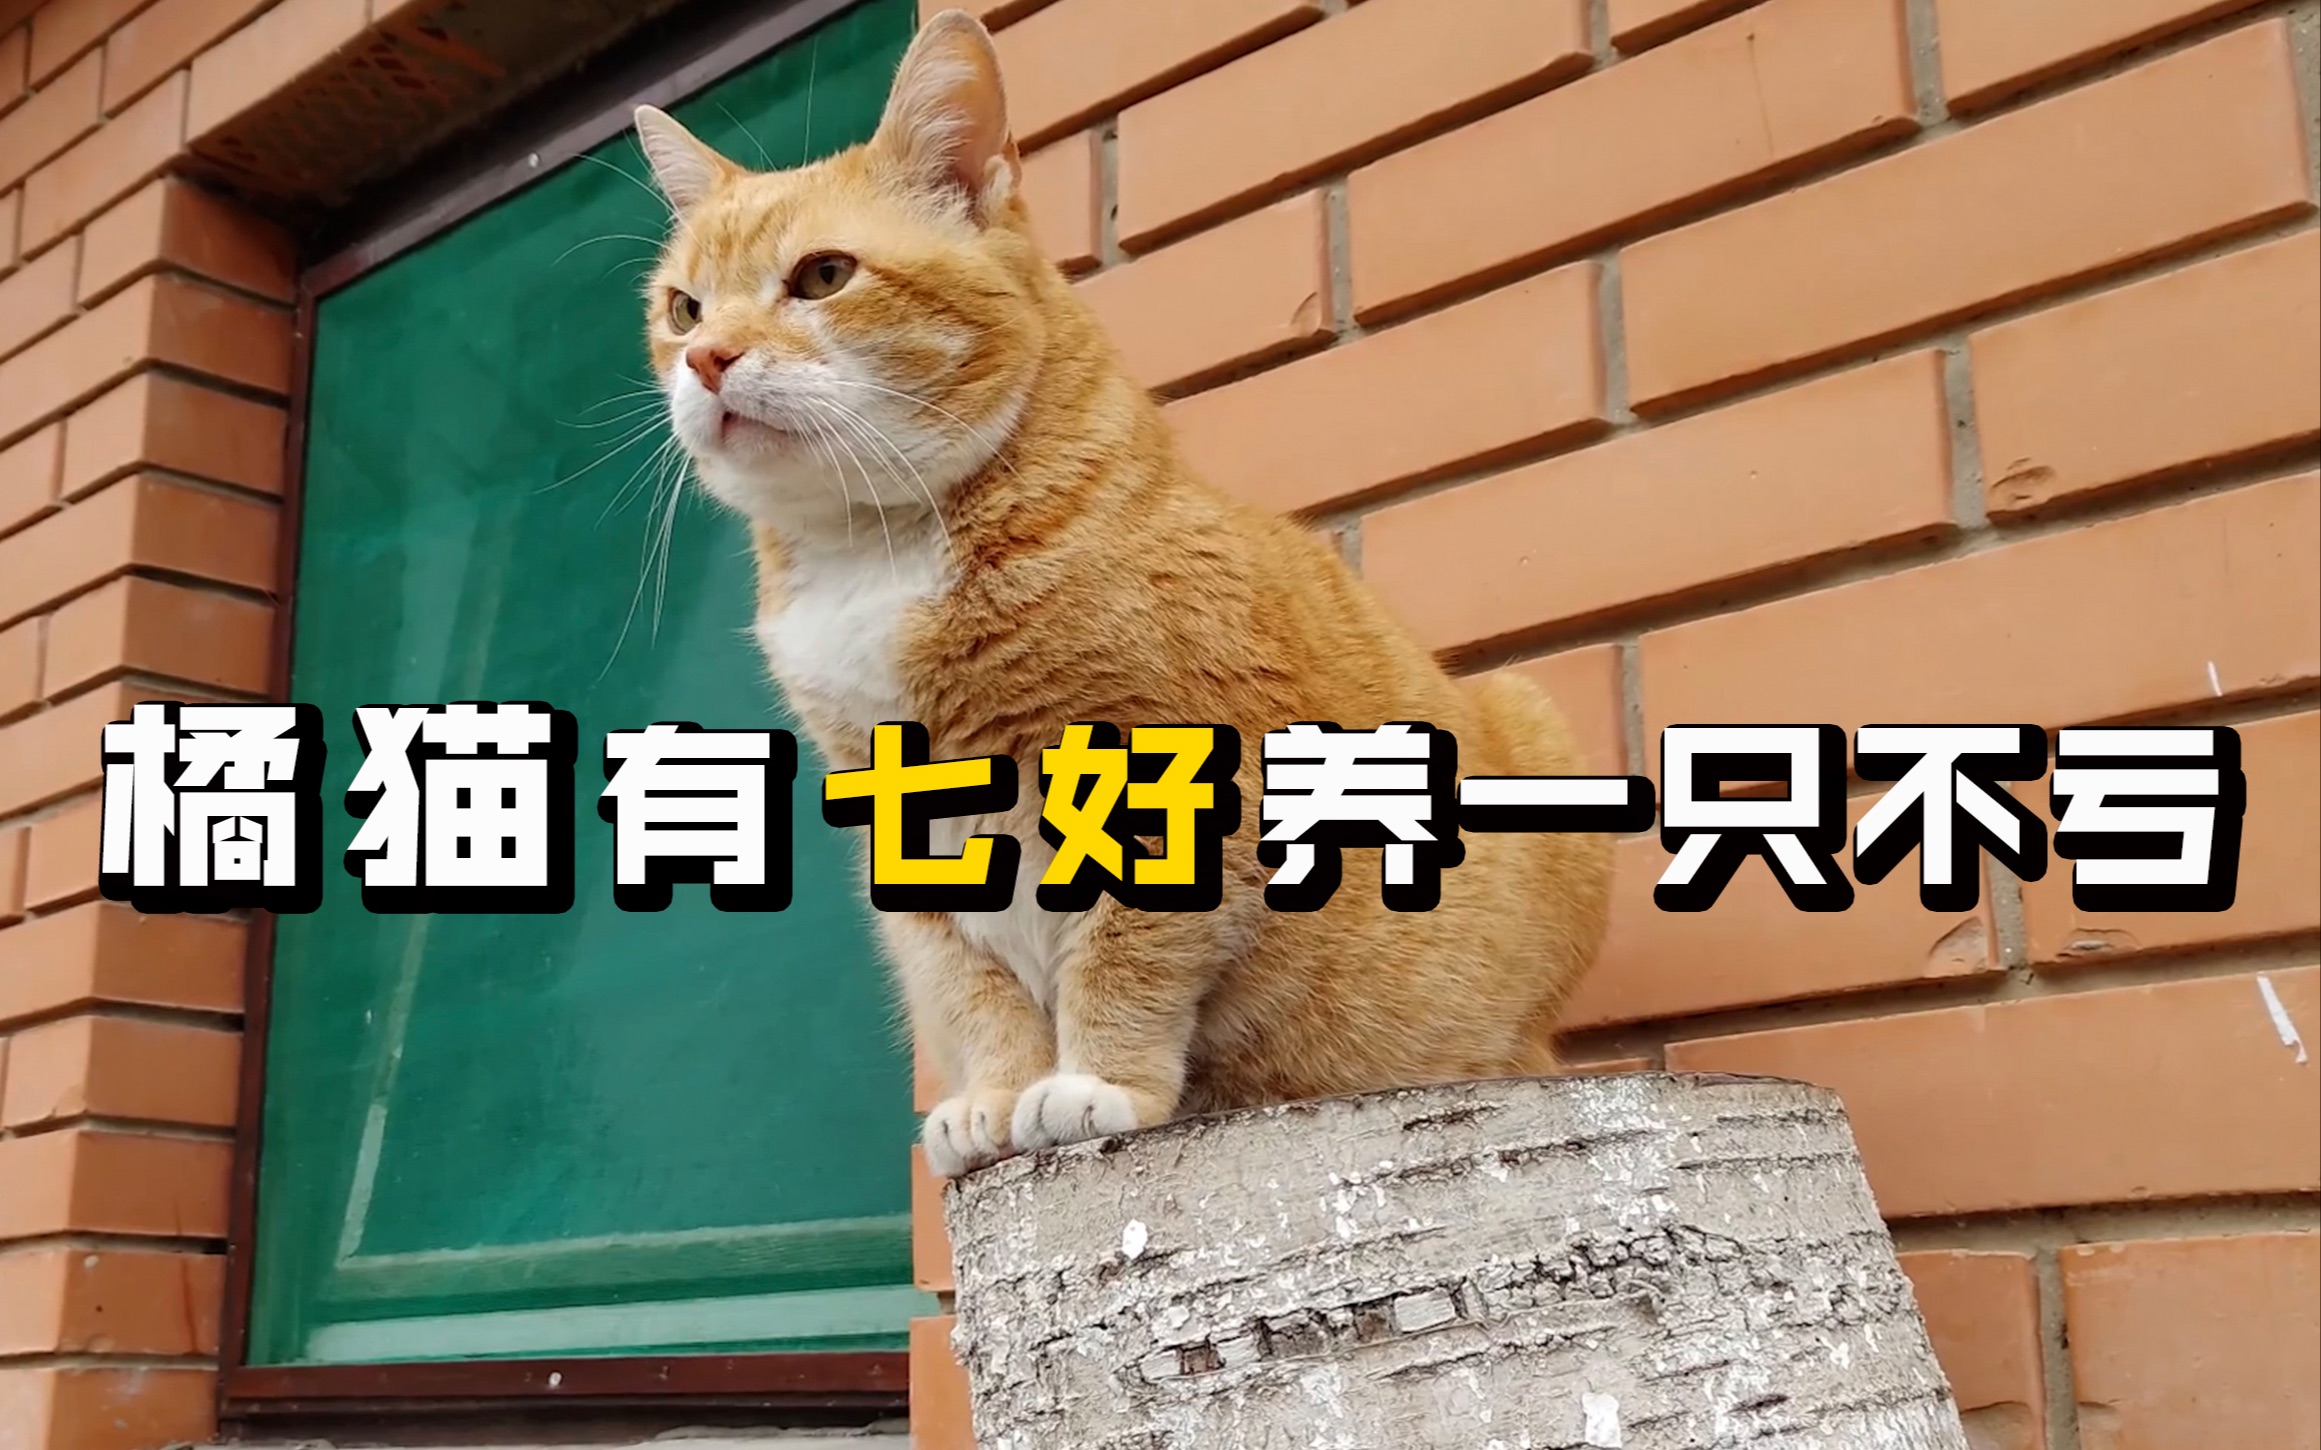 橘猫作为我们中华田园猫里面的“扛把子”，比很多品种猫还要受欢迎，为什么这么多人喜欢橘猫呢？因为橘猫是七好猫咪呀，养一只真的不亏